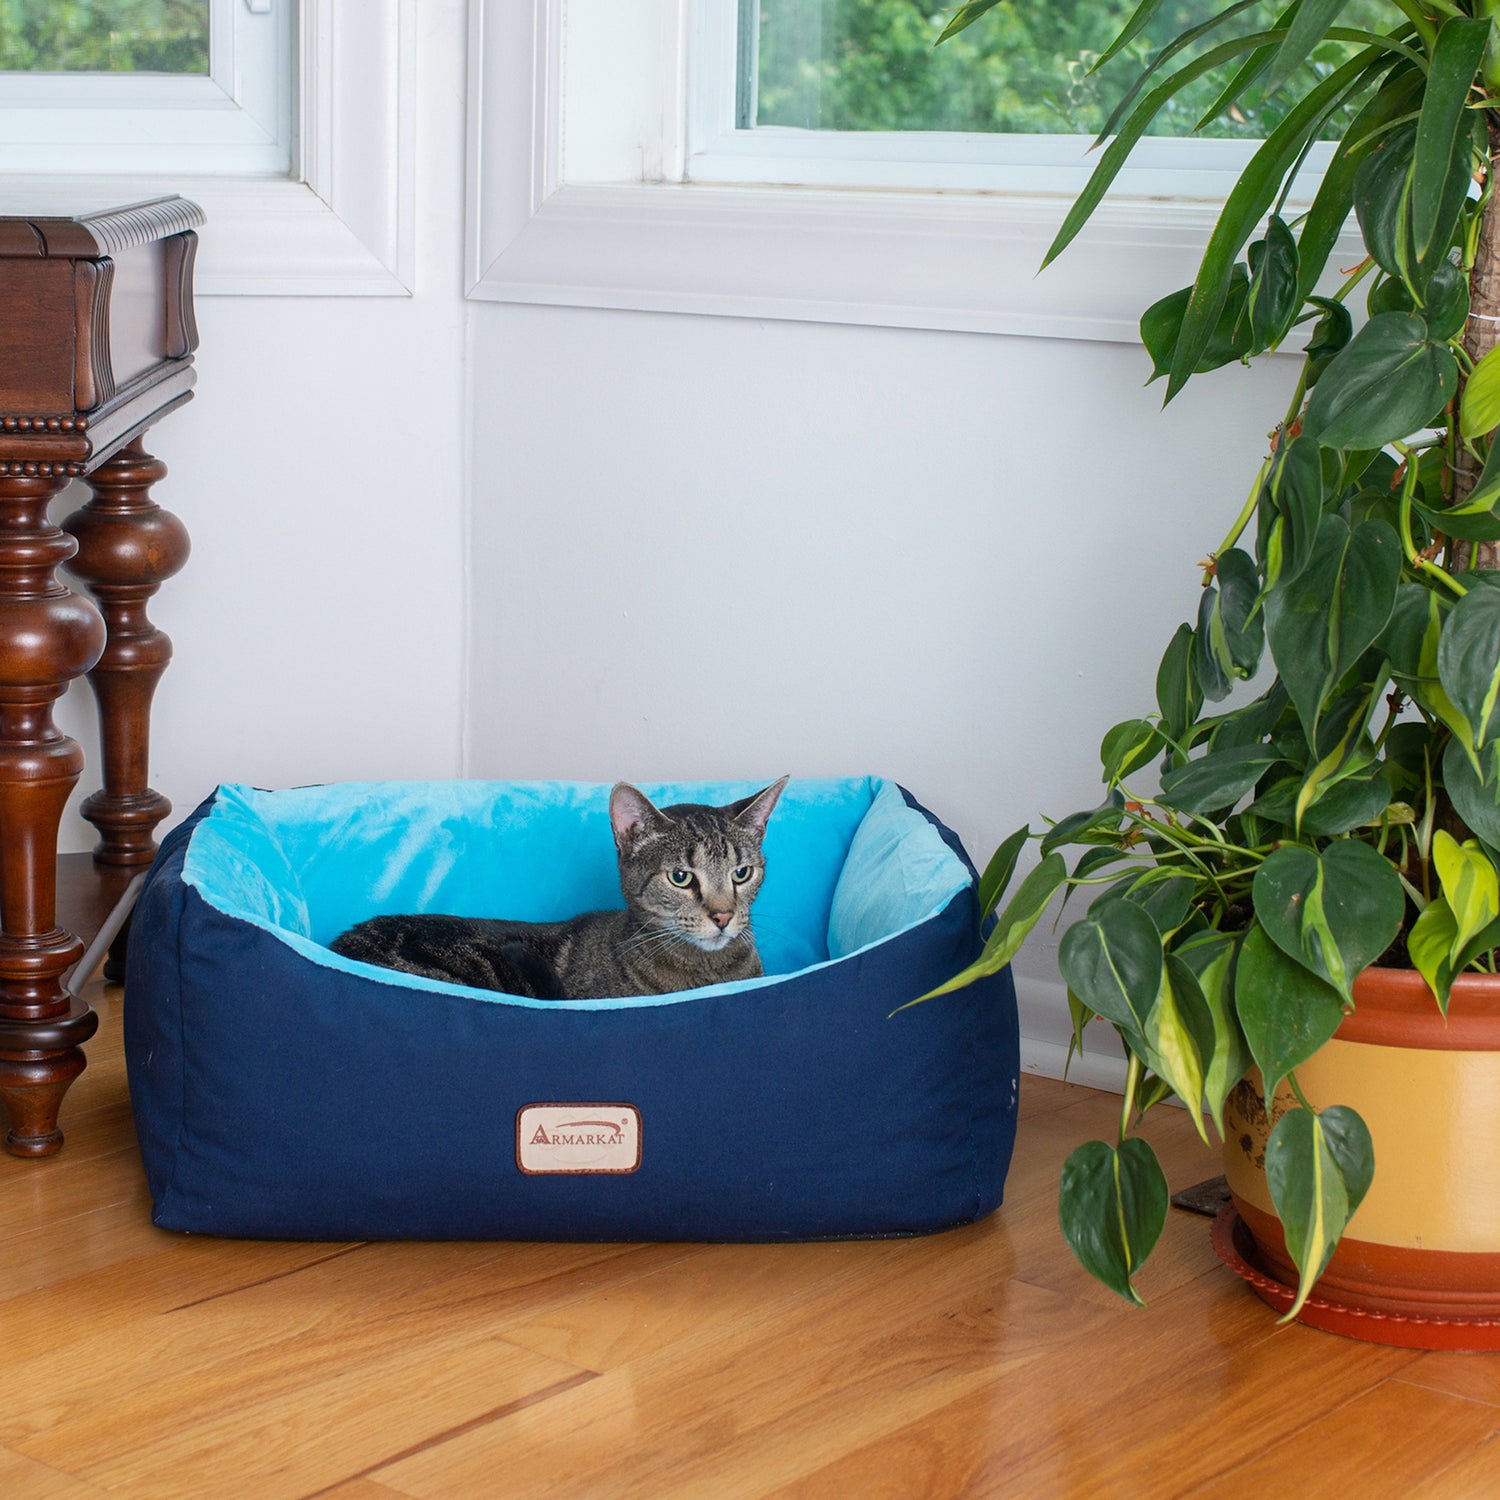 Armarkat Pet Cat Bed, Small Pet Bed, Navy Blue/Sky Blue, C09HSL/TL